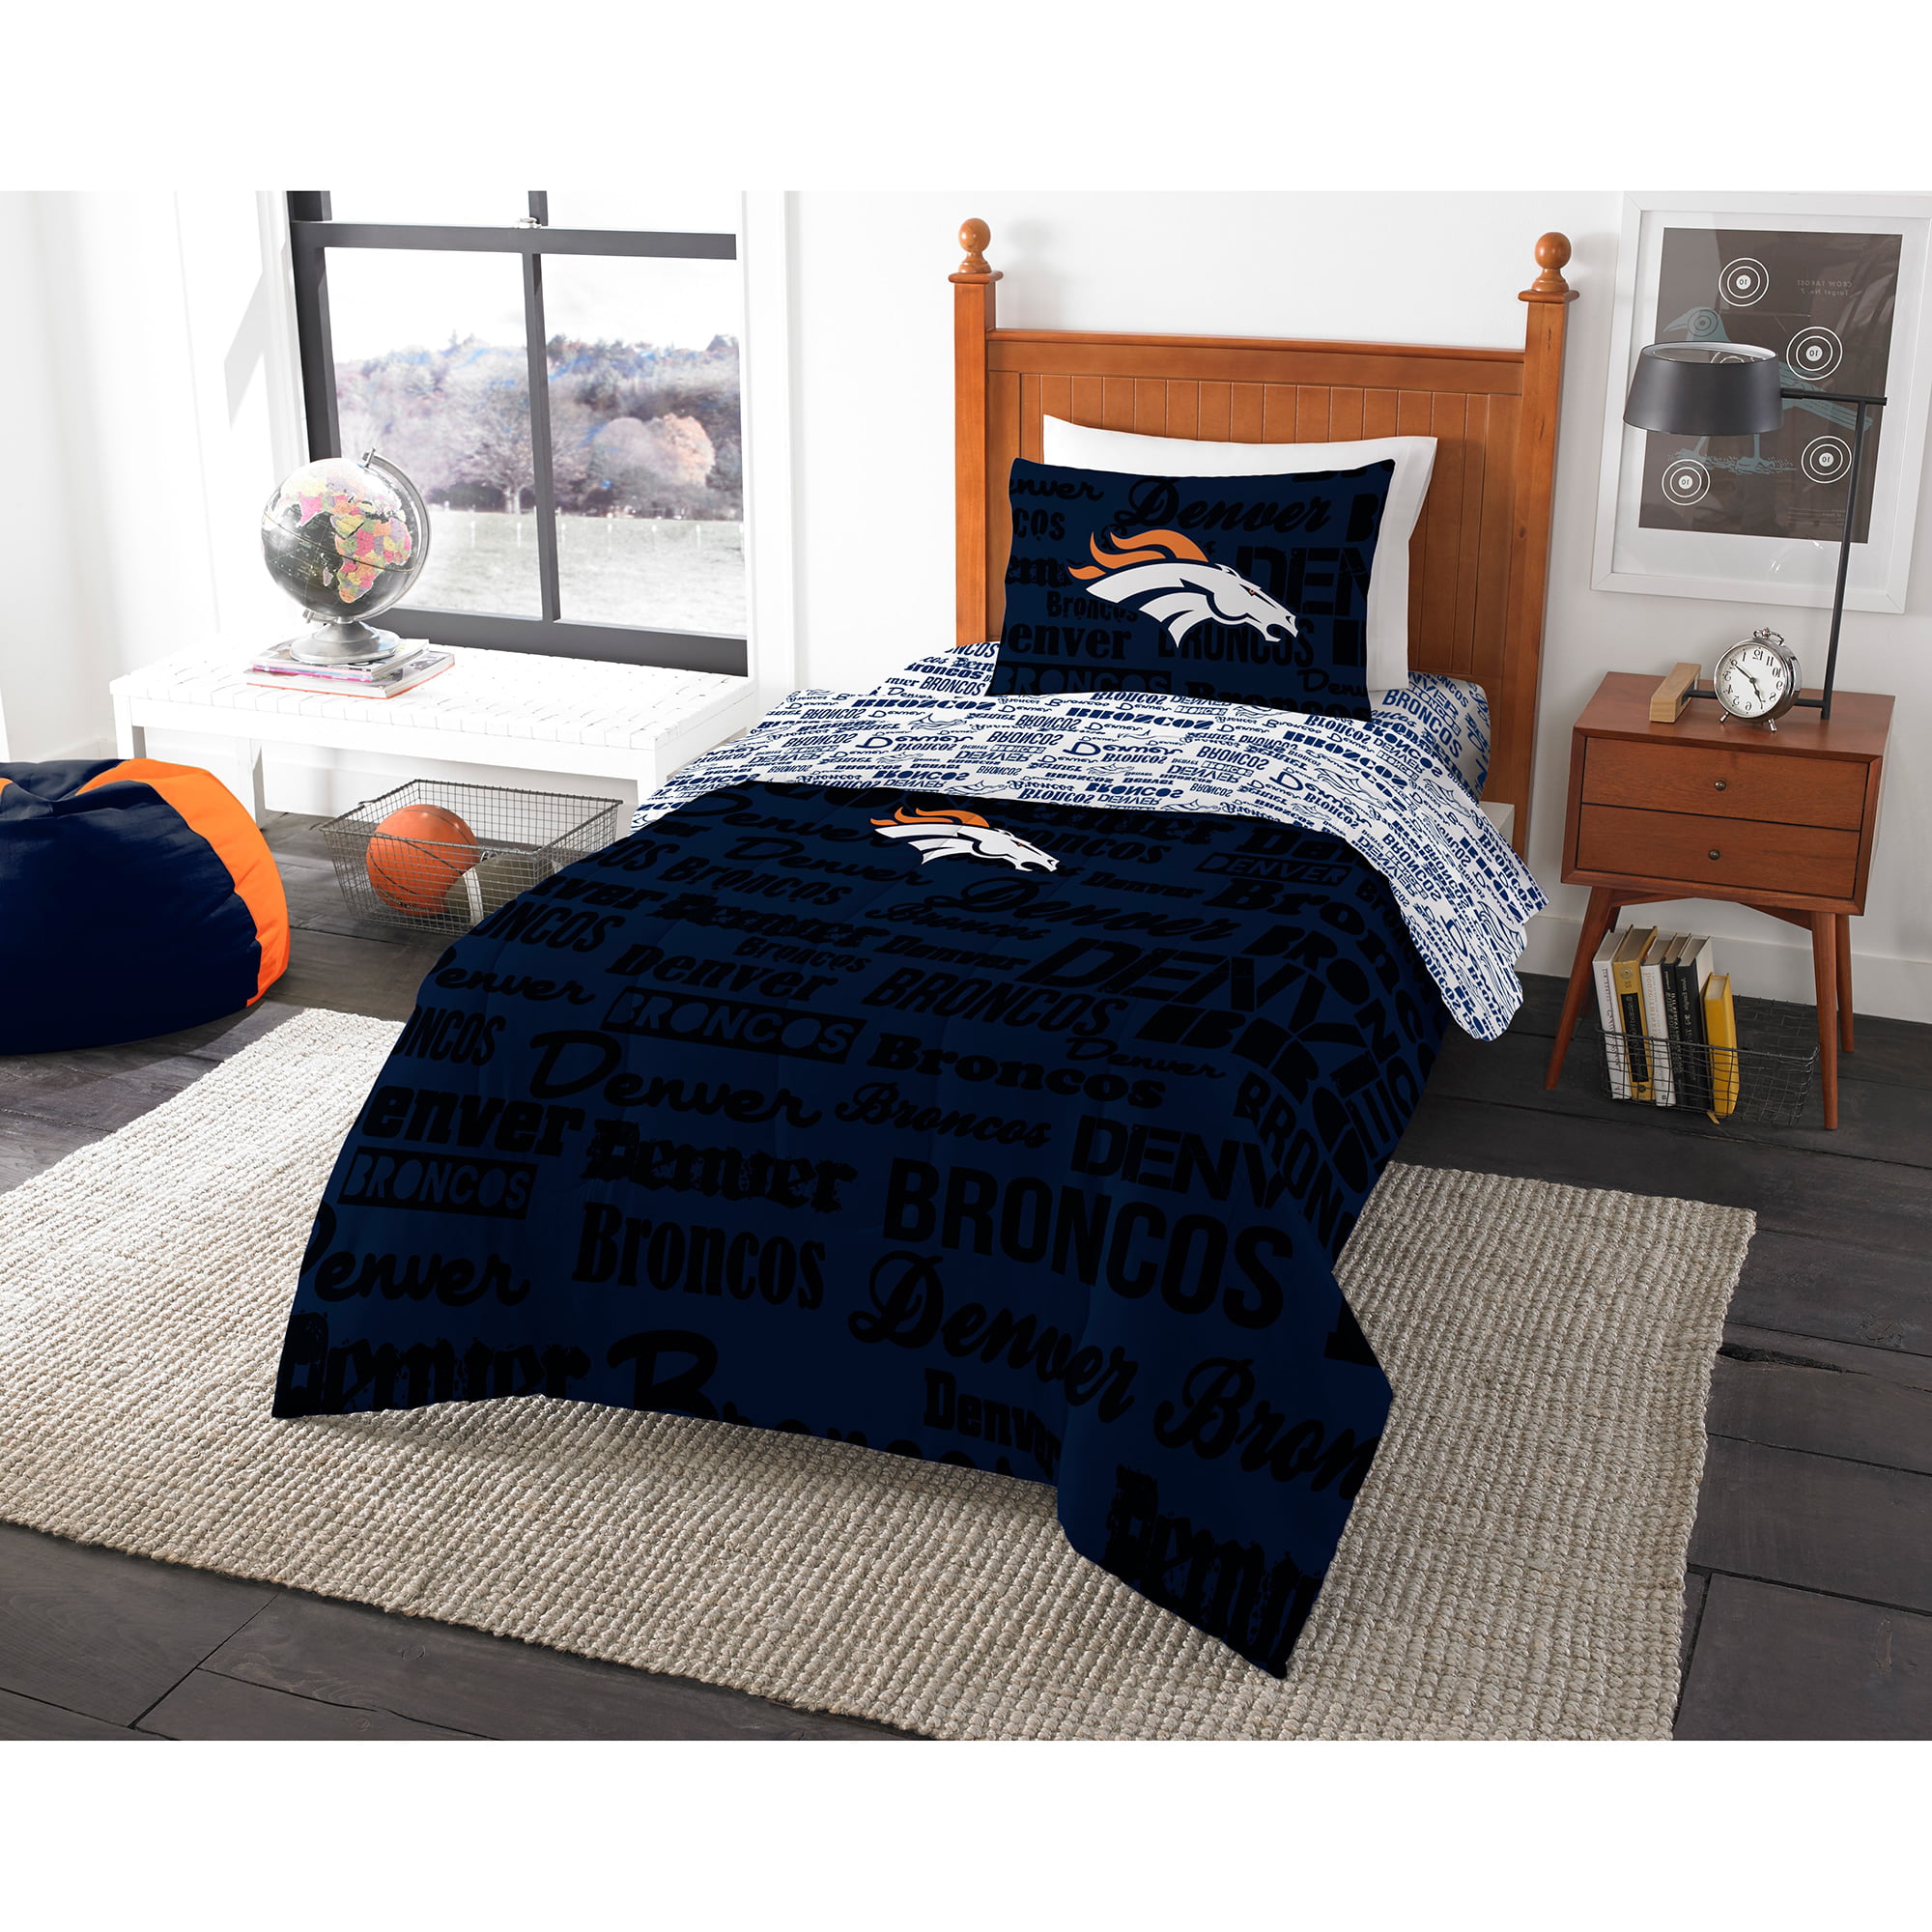 Nfl Denver Broncos Bed In A Bag, Denver Broncos King Size Bed Set